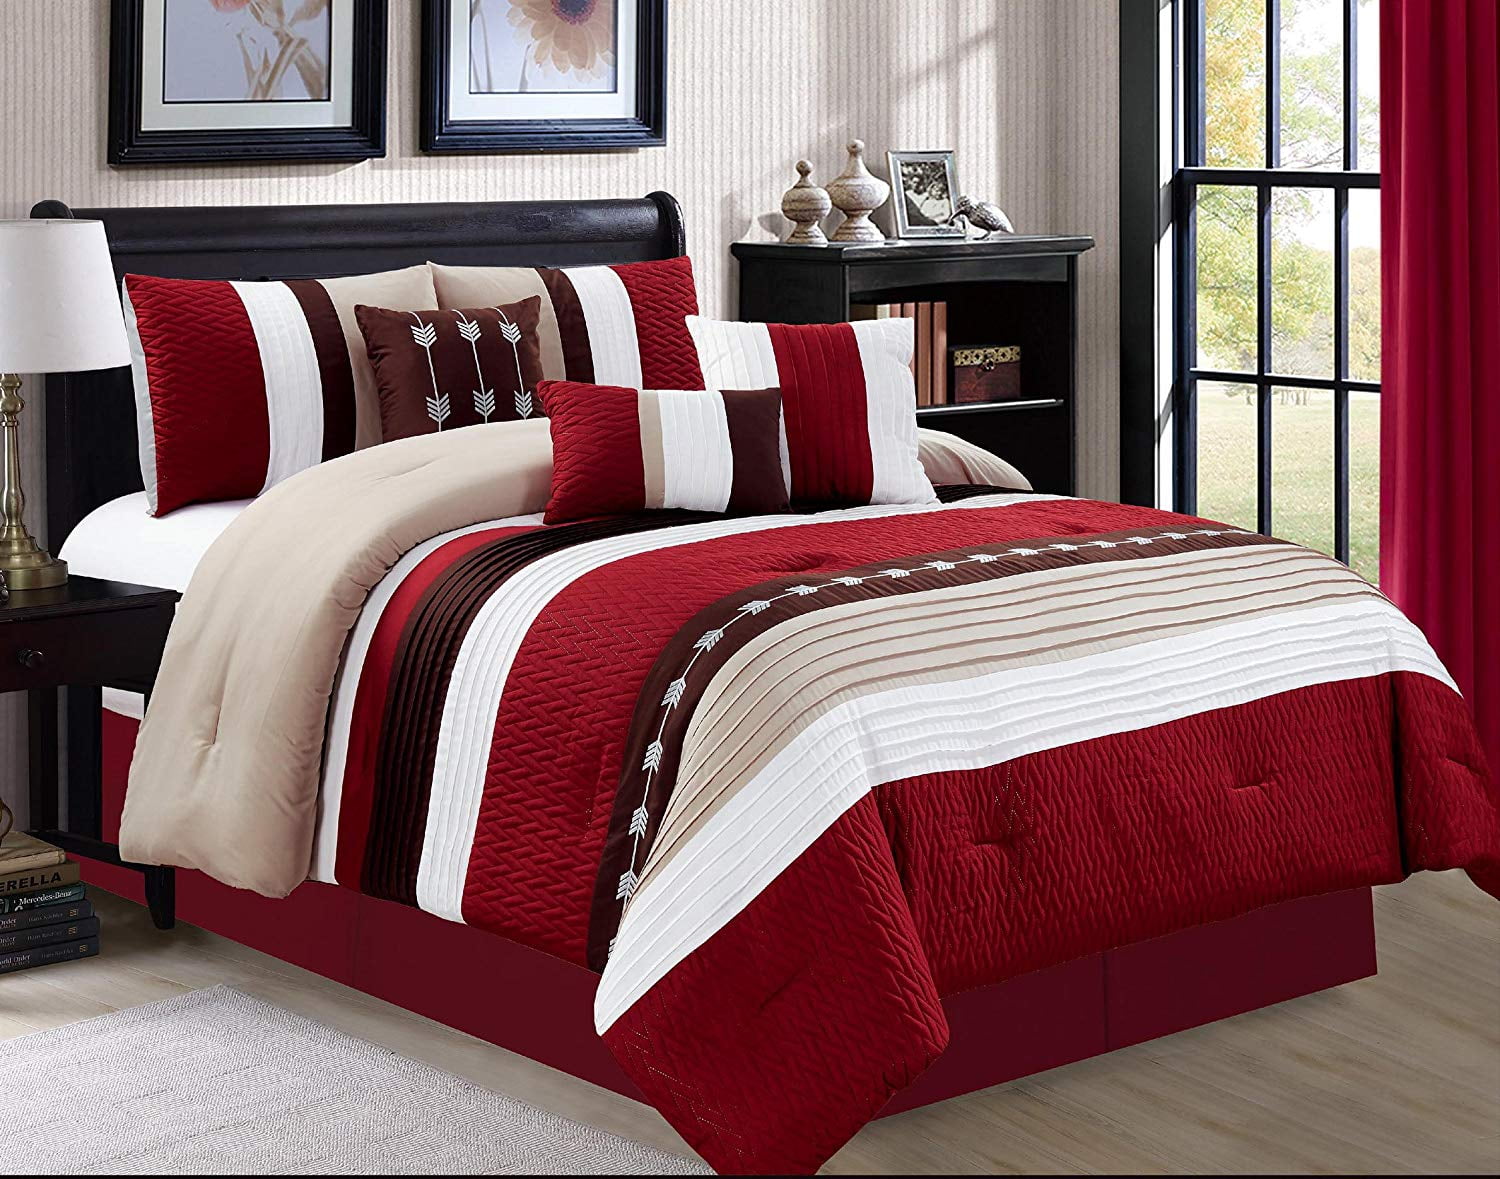 HGMart Bedding Comforter Set Bed In A Bag 